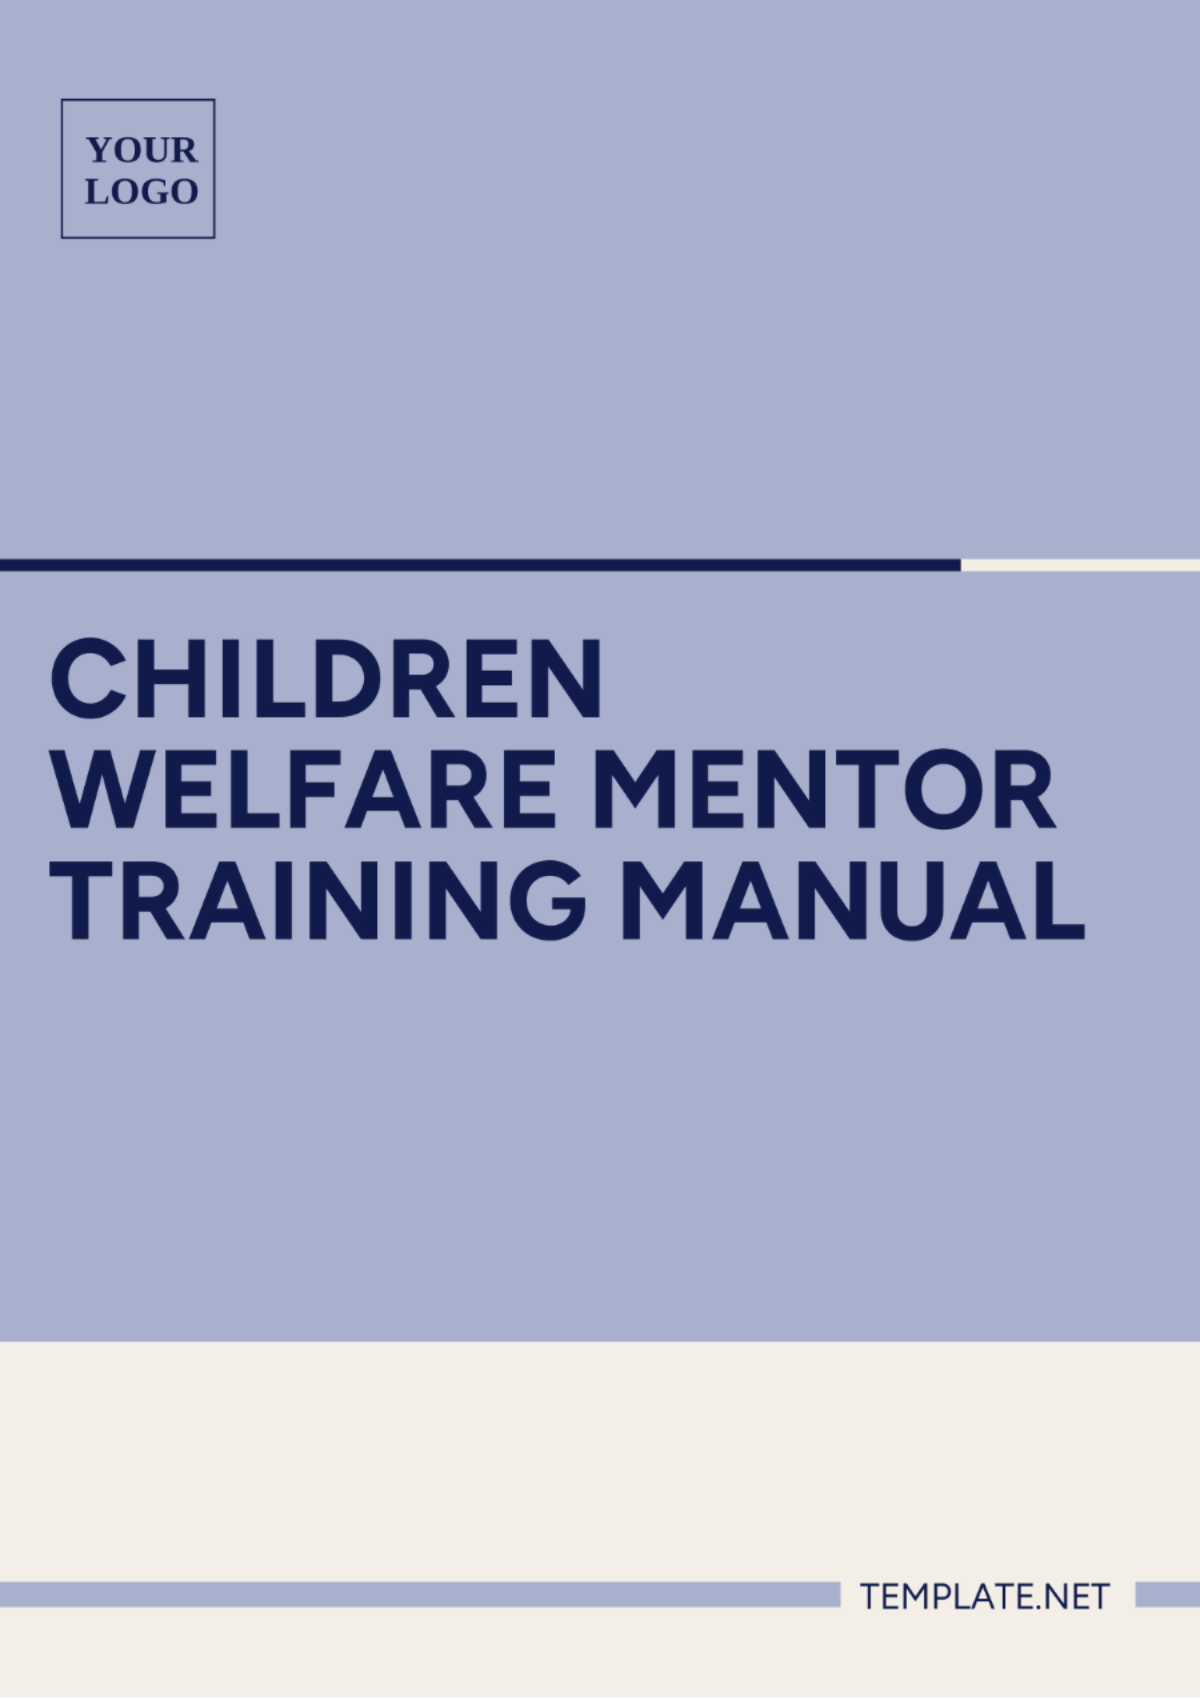 Children Welfare Mentor Training Manual Template